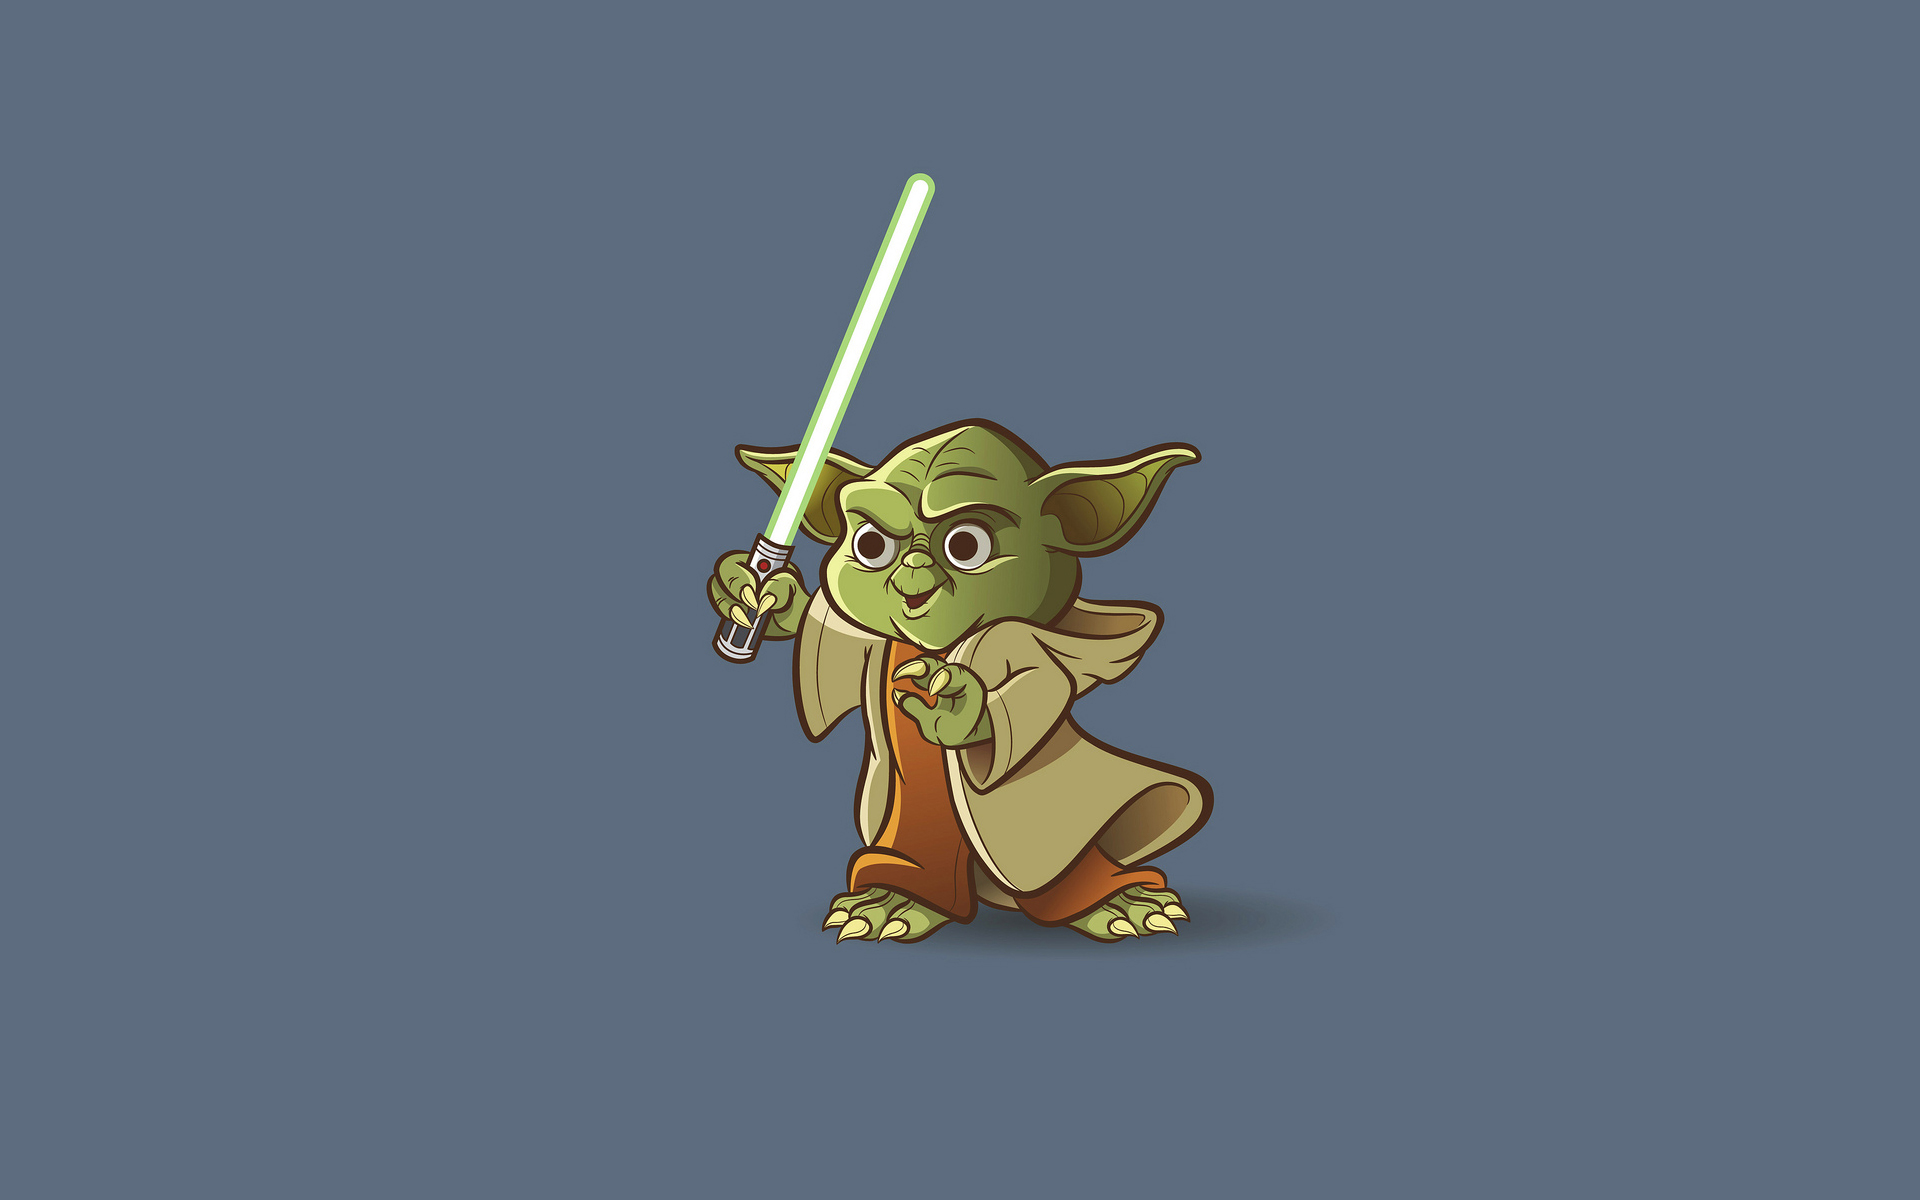 Yoda Art Wallpaper - Cartoon , HD Wallpaper & Backgrounds